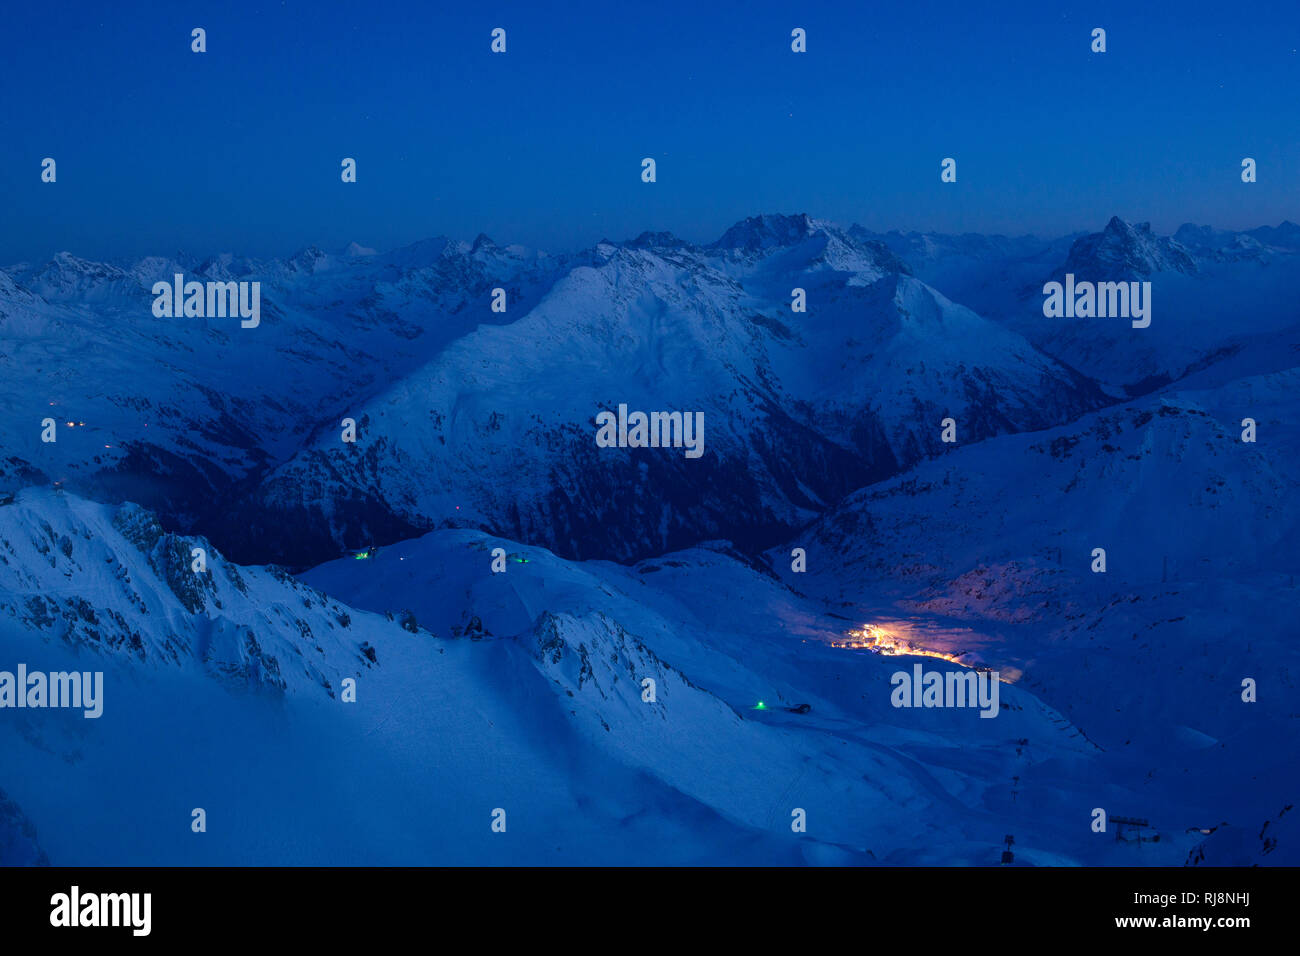 Blick von der Valluga nach St. Christoph im Tal bei Nacht, Skigebiet St. Anton am Arlberg, Lechtaler Alpen, Tirol Österreich Foto Stock